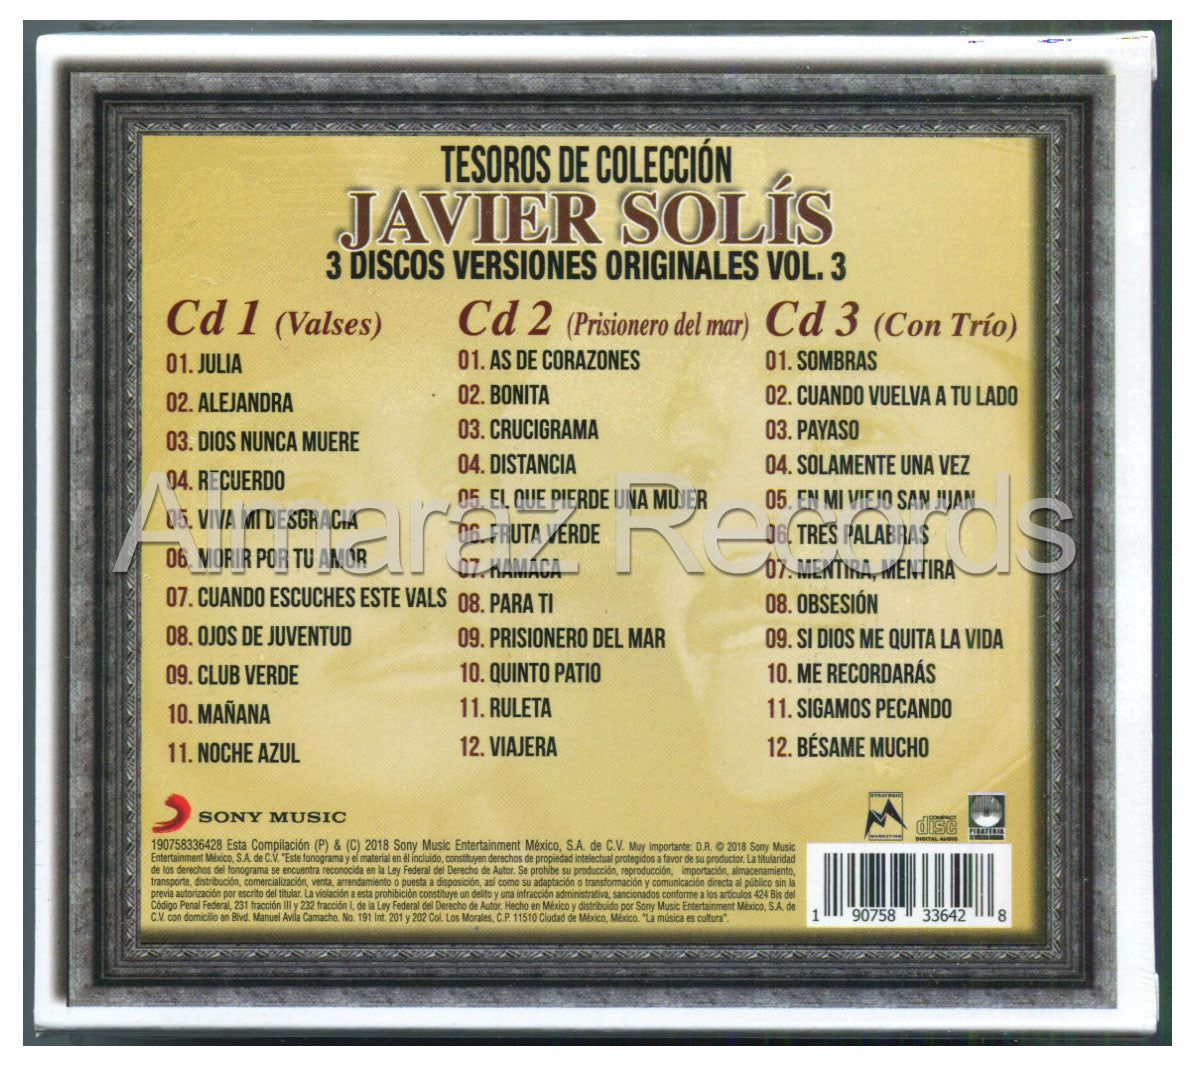 Javier Solis Tesoros De Coleccion Vol. 3 3CD